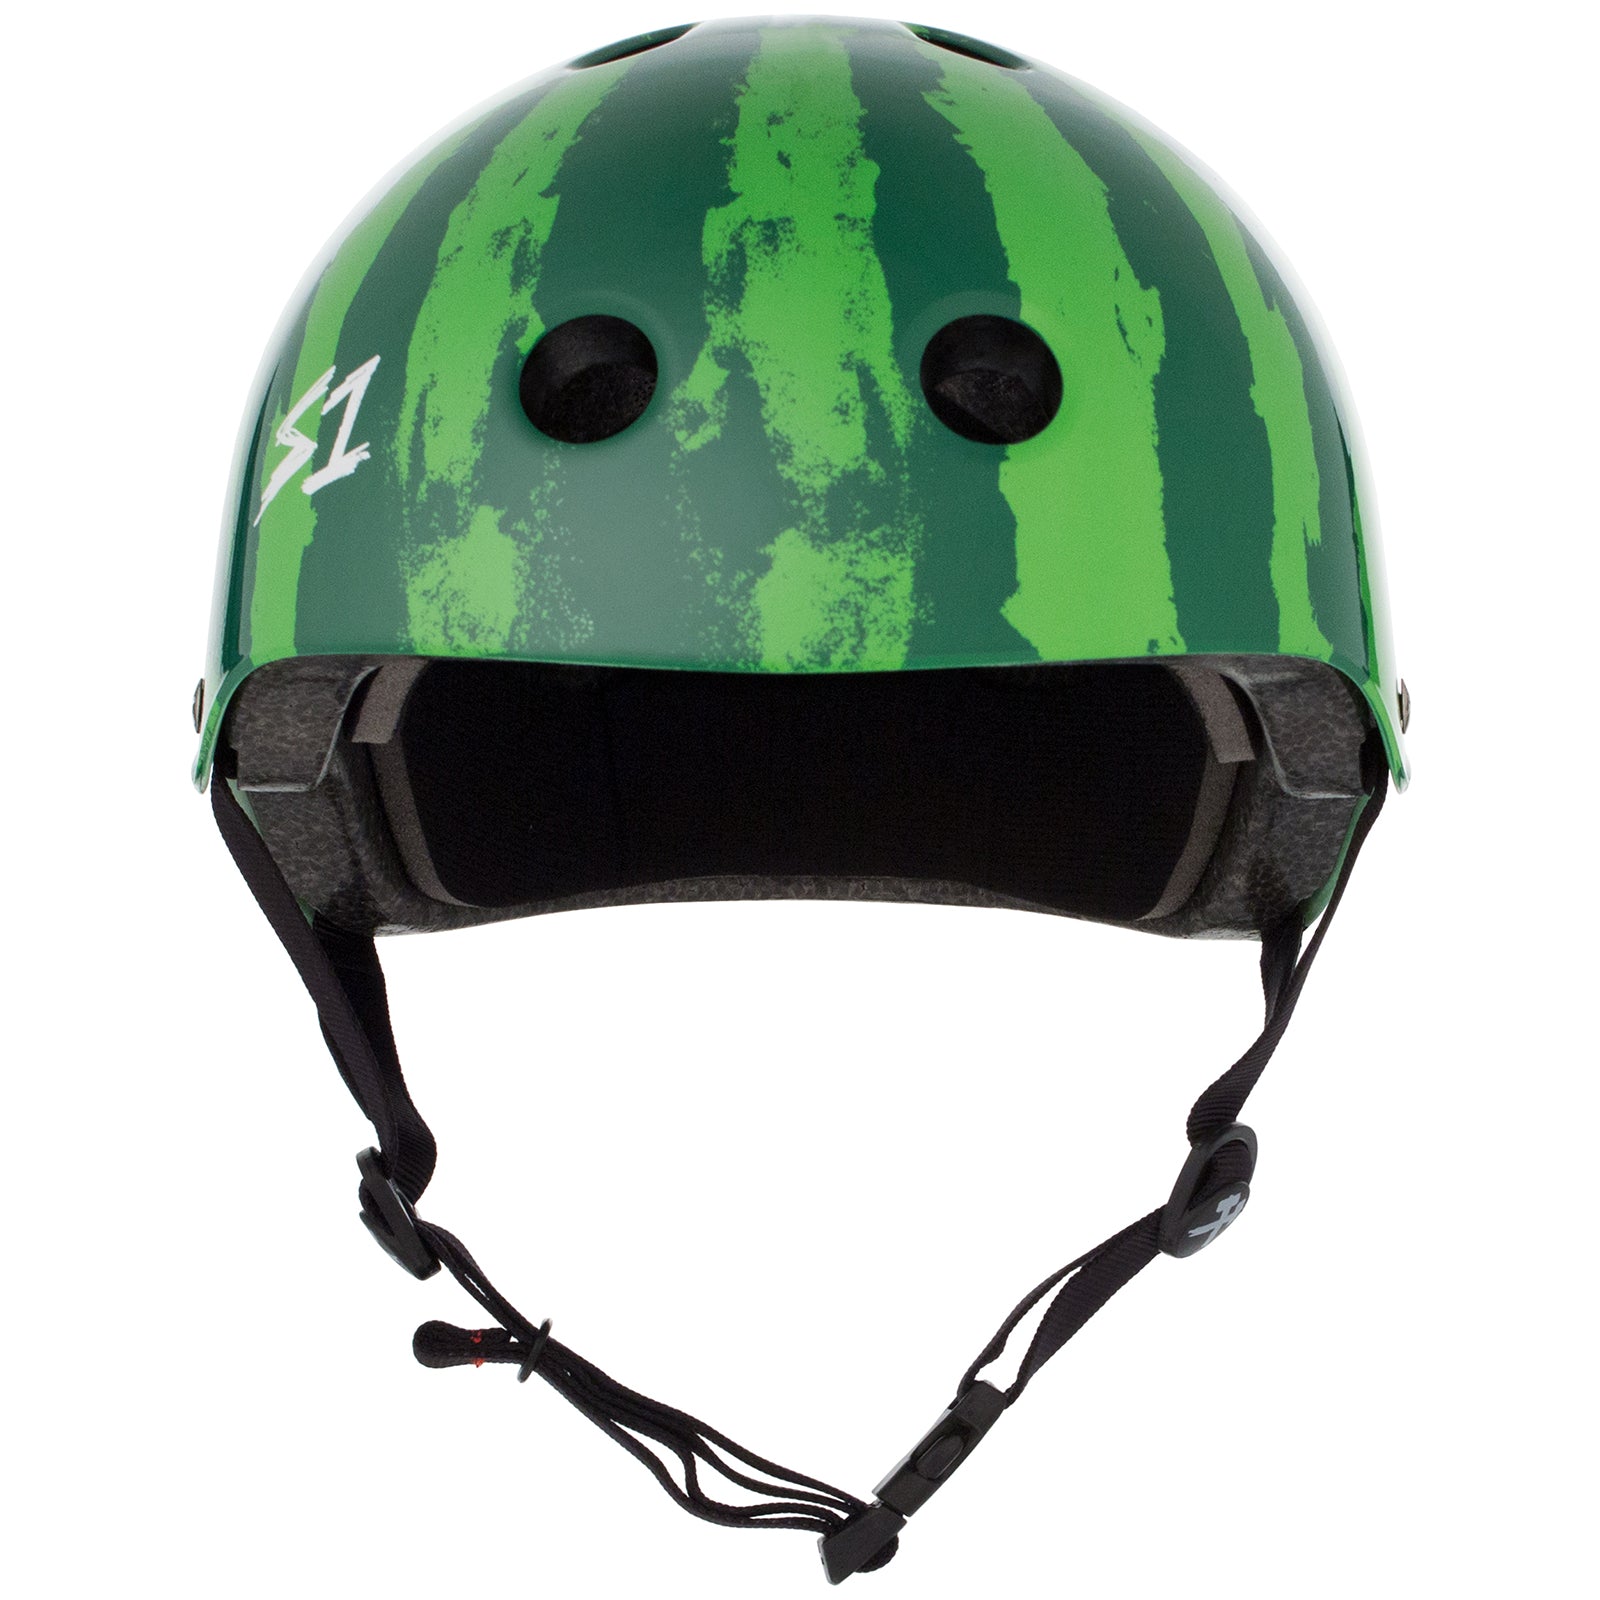 S1 Lifer Helmet - Casque Melon d'eau (Watermelon)